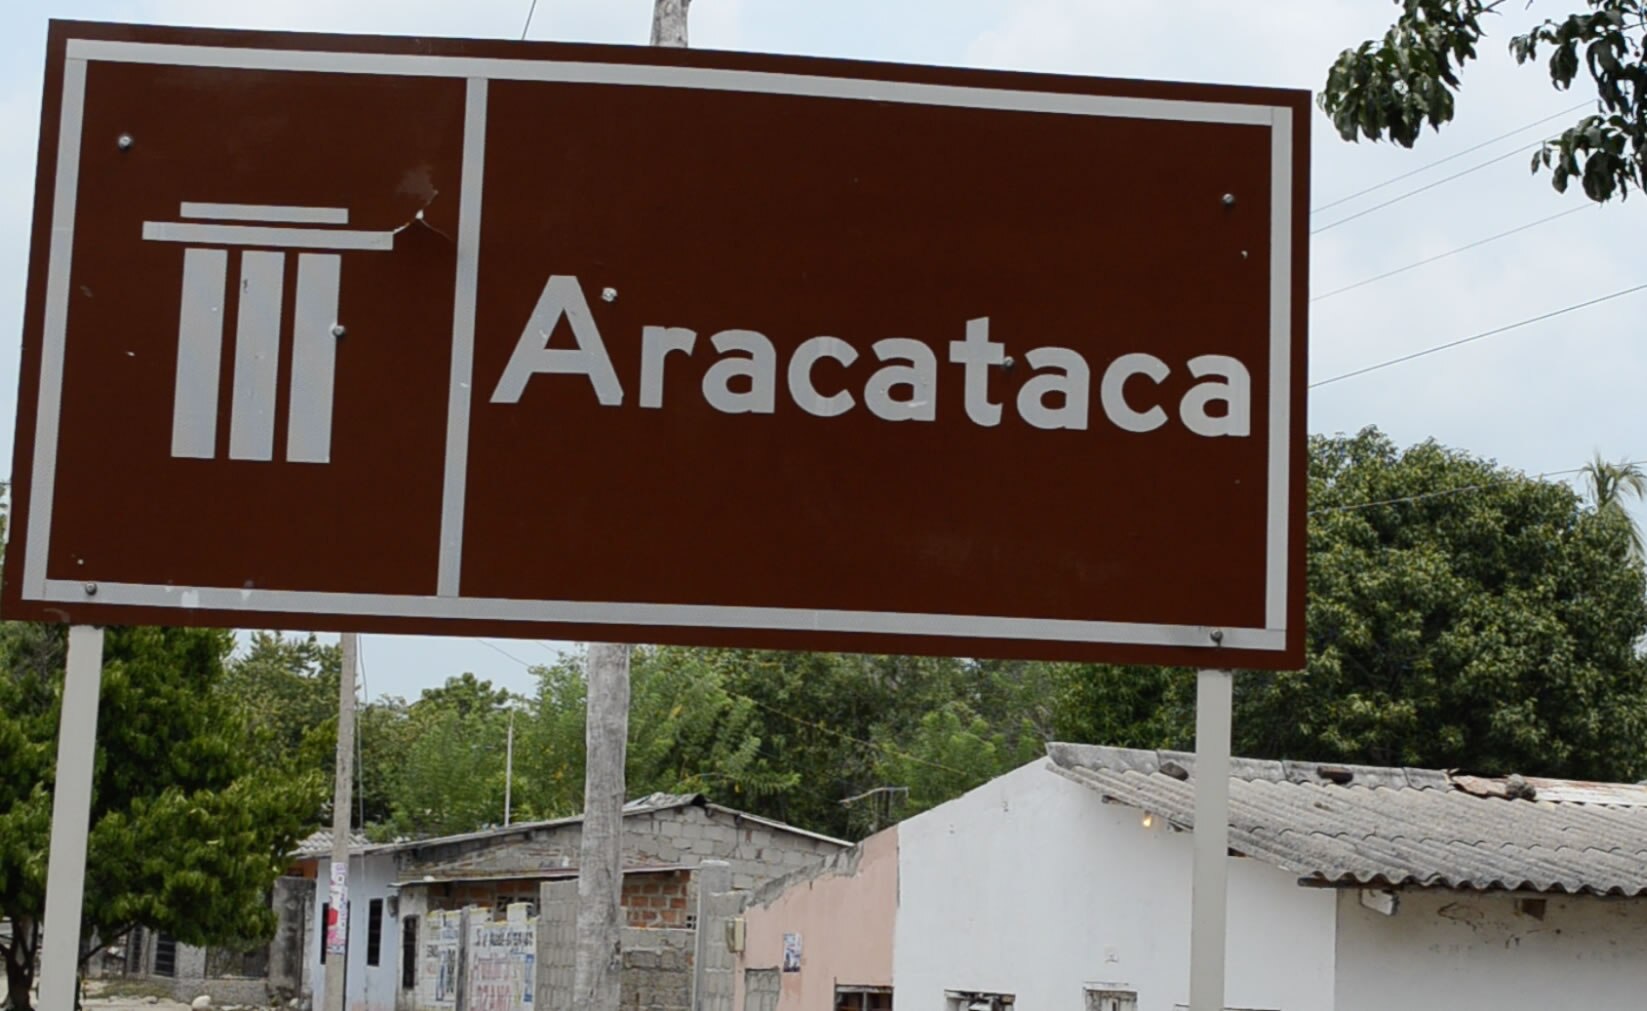 Entrada a Aracataca, pueblo donde nació García Márquez